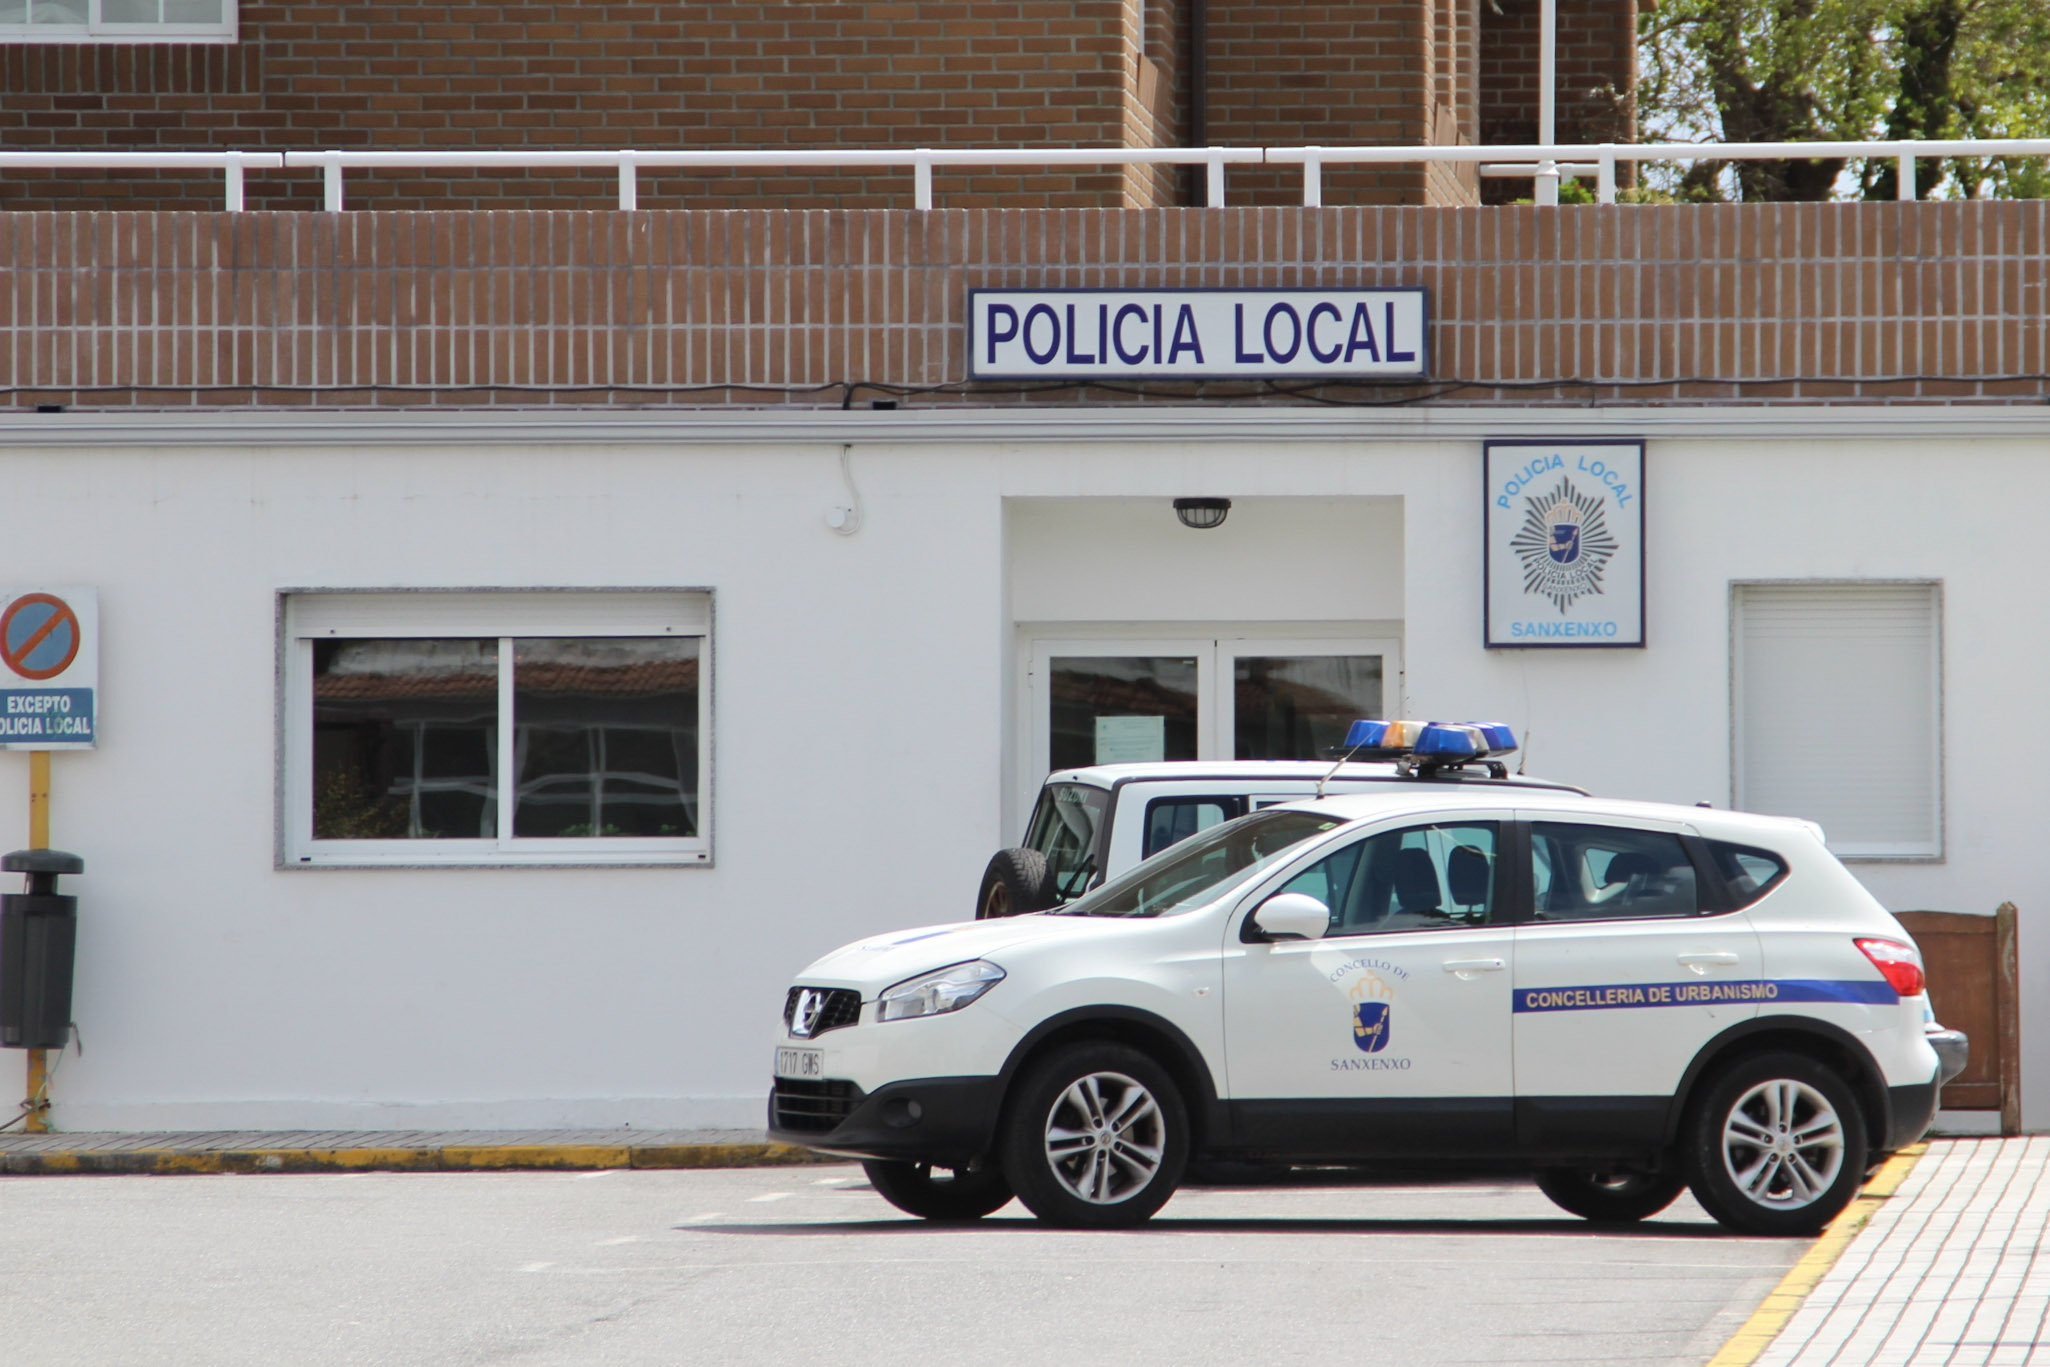 LA POLICÍA LOCAL DE SANXENXO SE REFUERZA CON 40 NUEVOS AUXILIARES Y TRES AGENTES POR COMISIÓN DE SERVICIO